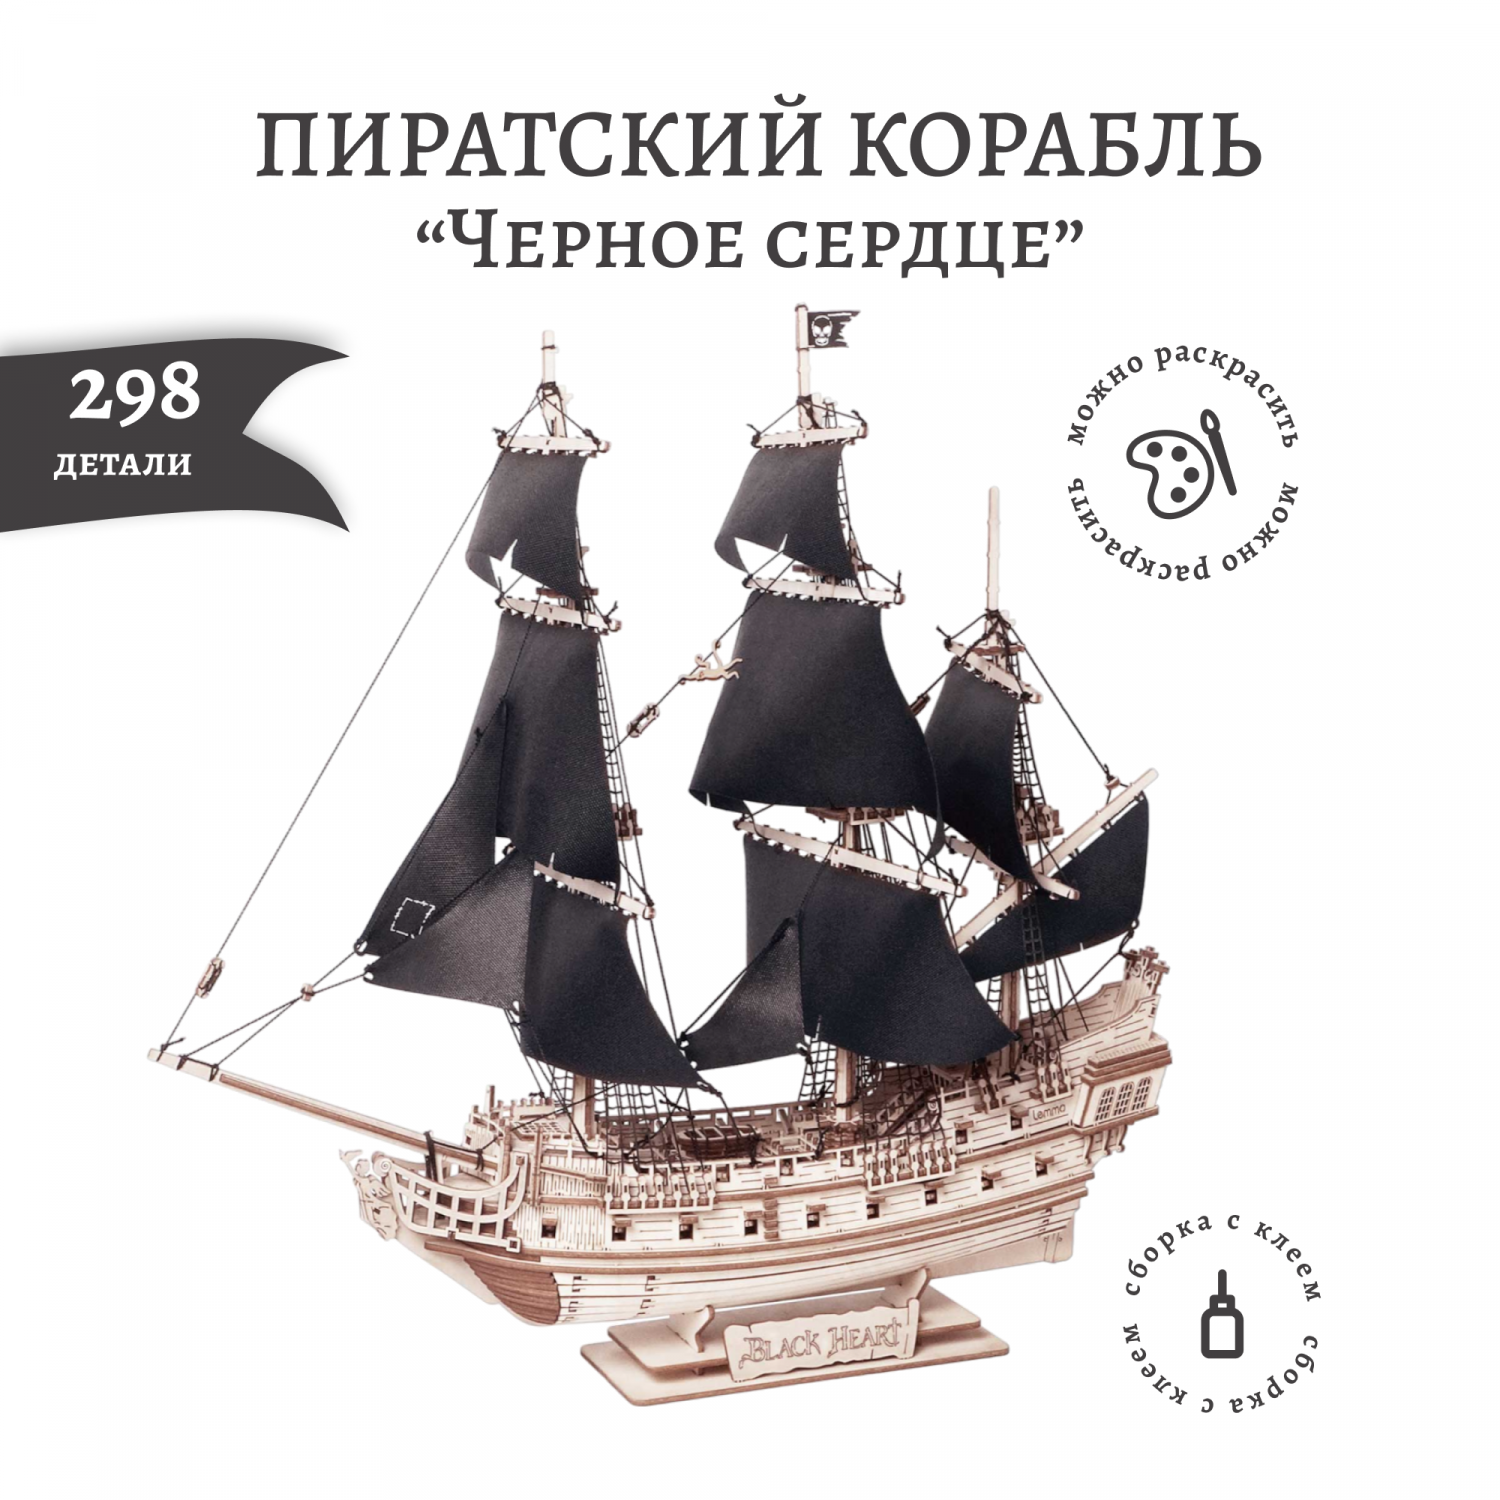 Сборные деревянные модели кораблей